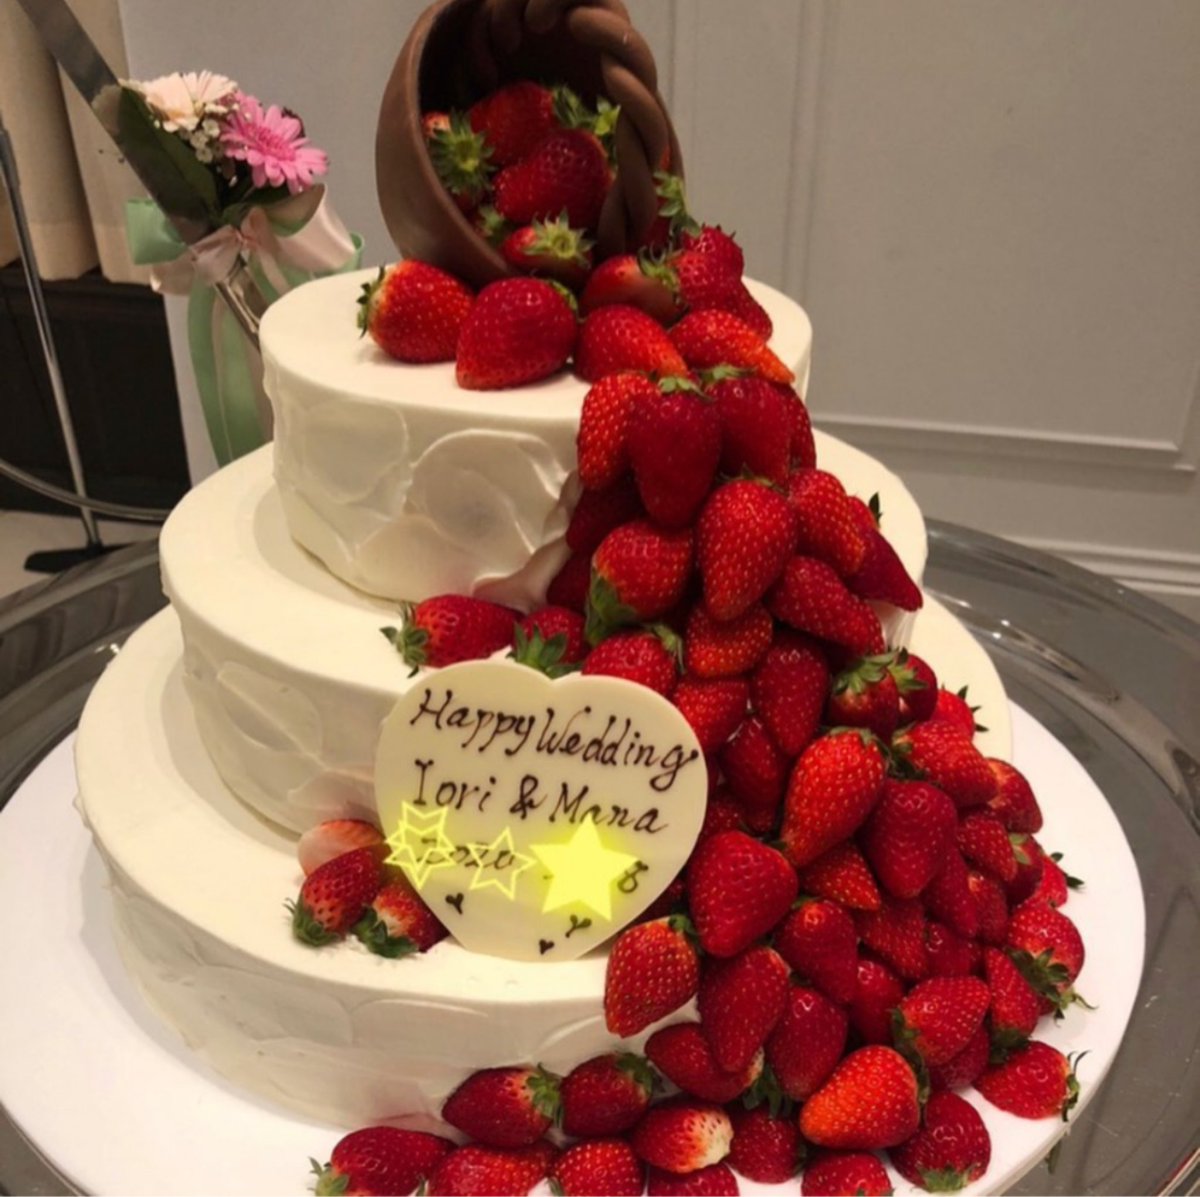 つくば結婚式場 セントルミエール 公式 Auf Twitter オリジナルウェディングケーキ かごから苺が 溢れ出したようなデザイン シンプルではありますが インパクト大ですね 茨城 つくば 挙式 披露宴 ウェディングケーキ 自分たちらしい オリジナル